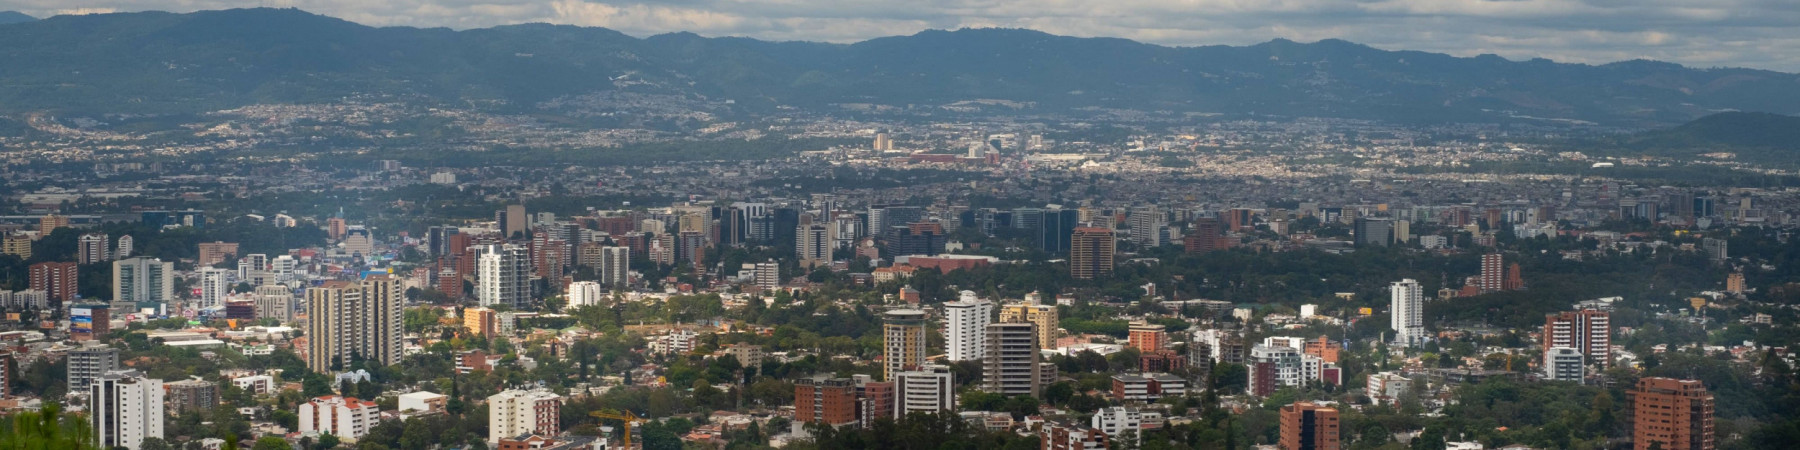 Ciudad de Guatemala. Foto de Wikipedia.